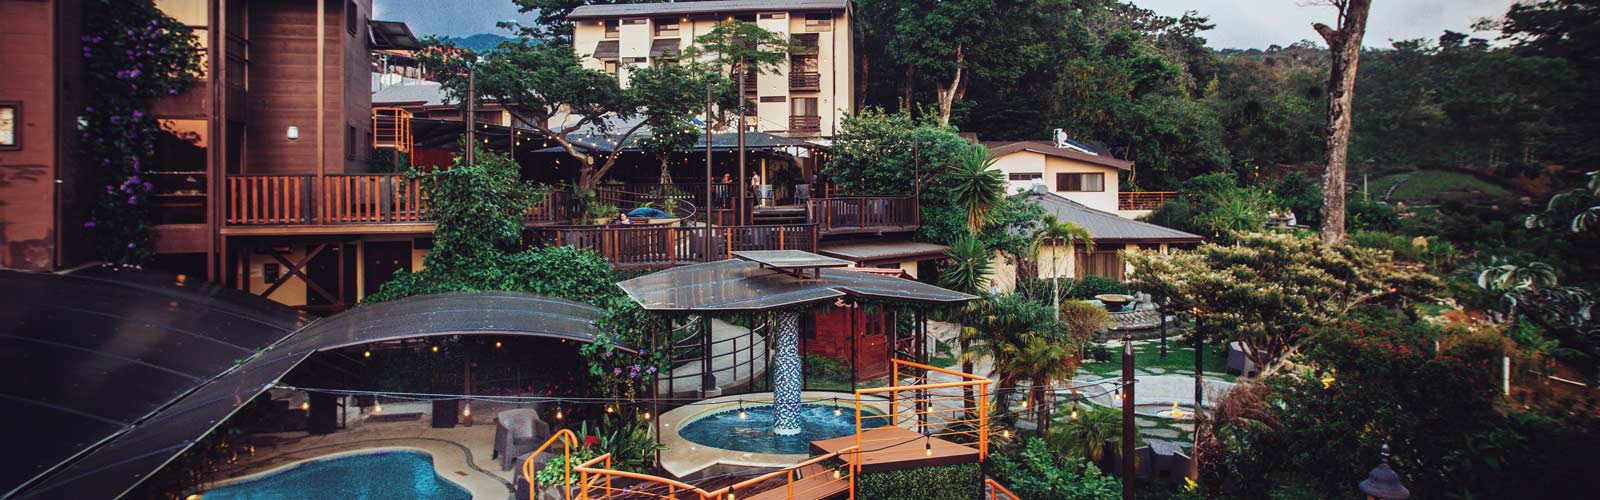 Monteverde hotels Costa Rica